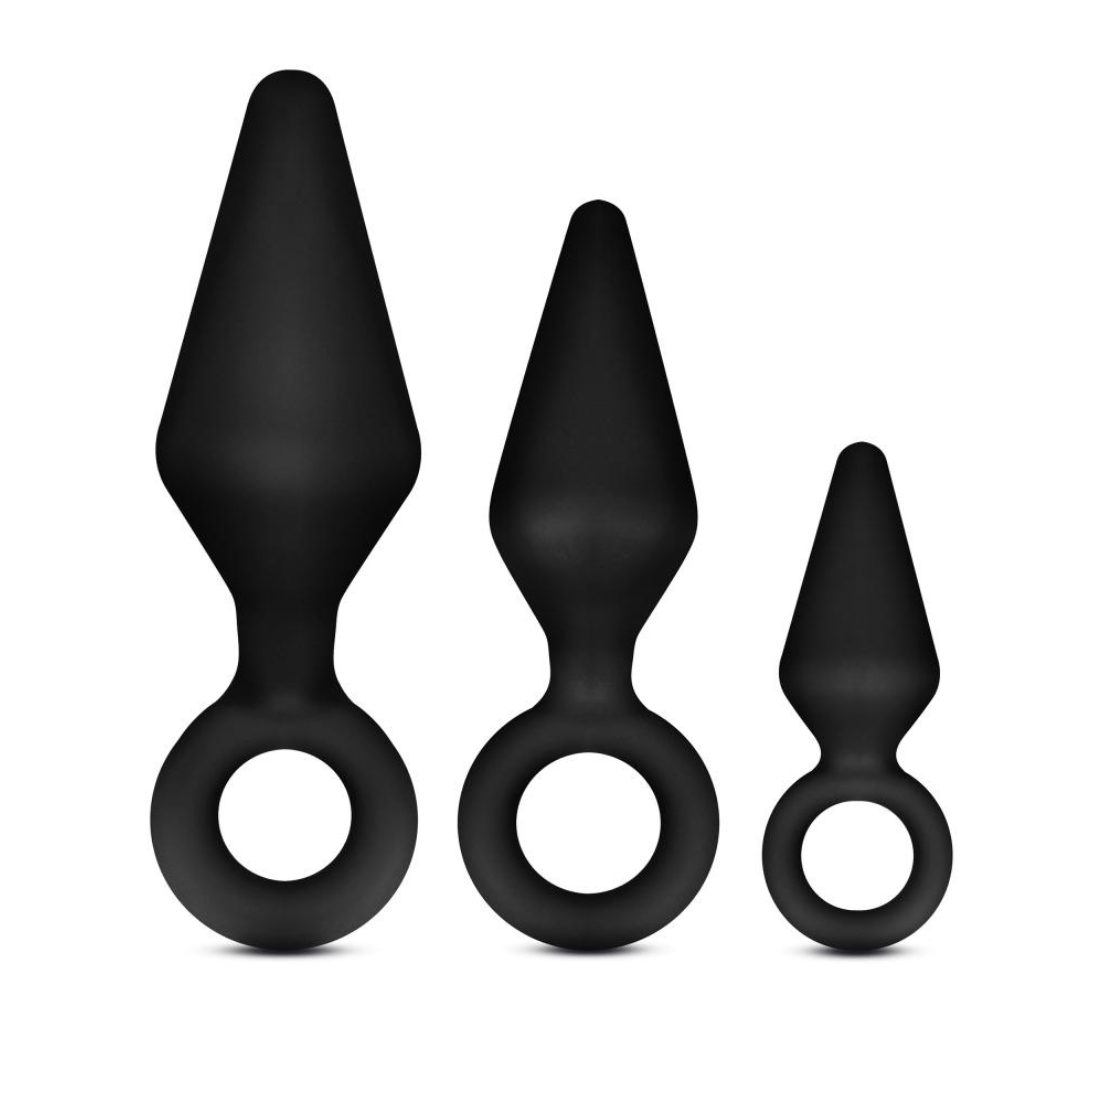 Zwarte butt plug set van Anal Adventures met 3 butt plugs in verschillende formaten, te koop bij Flavourez.